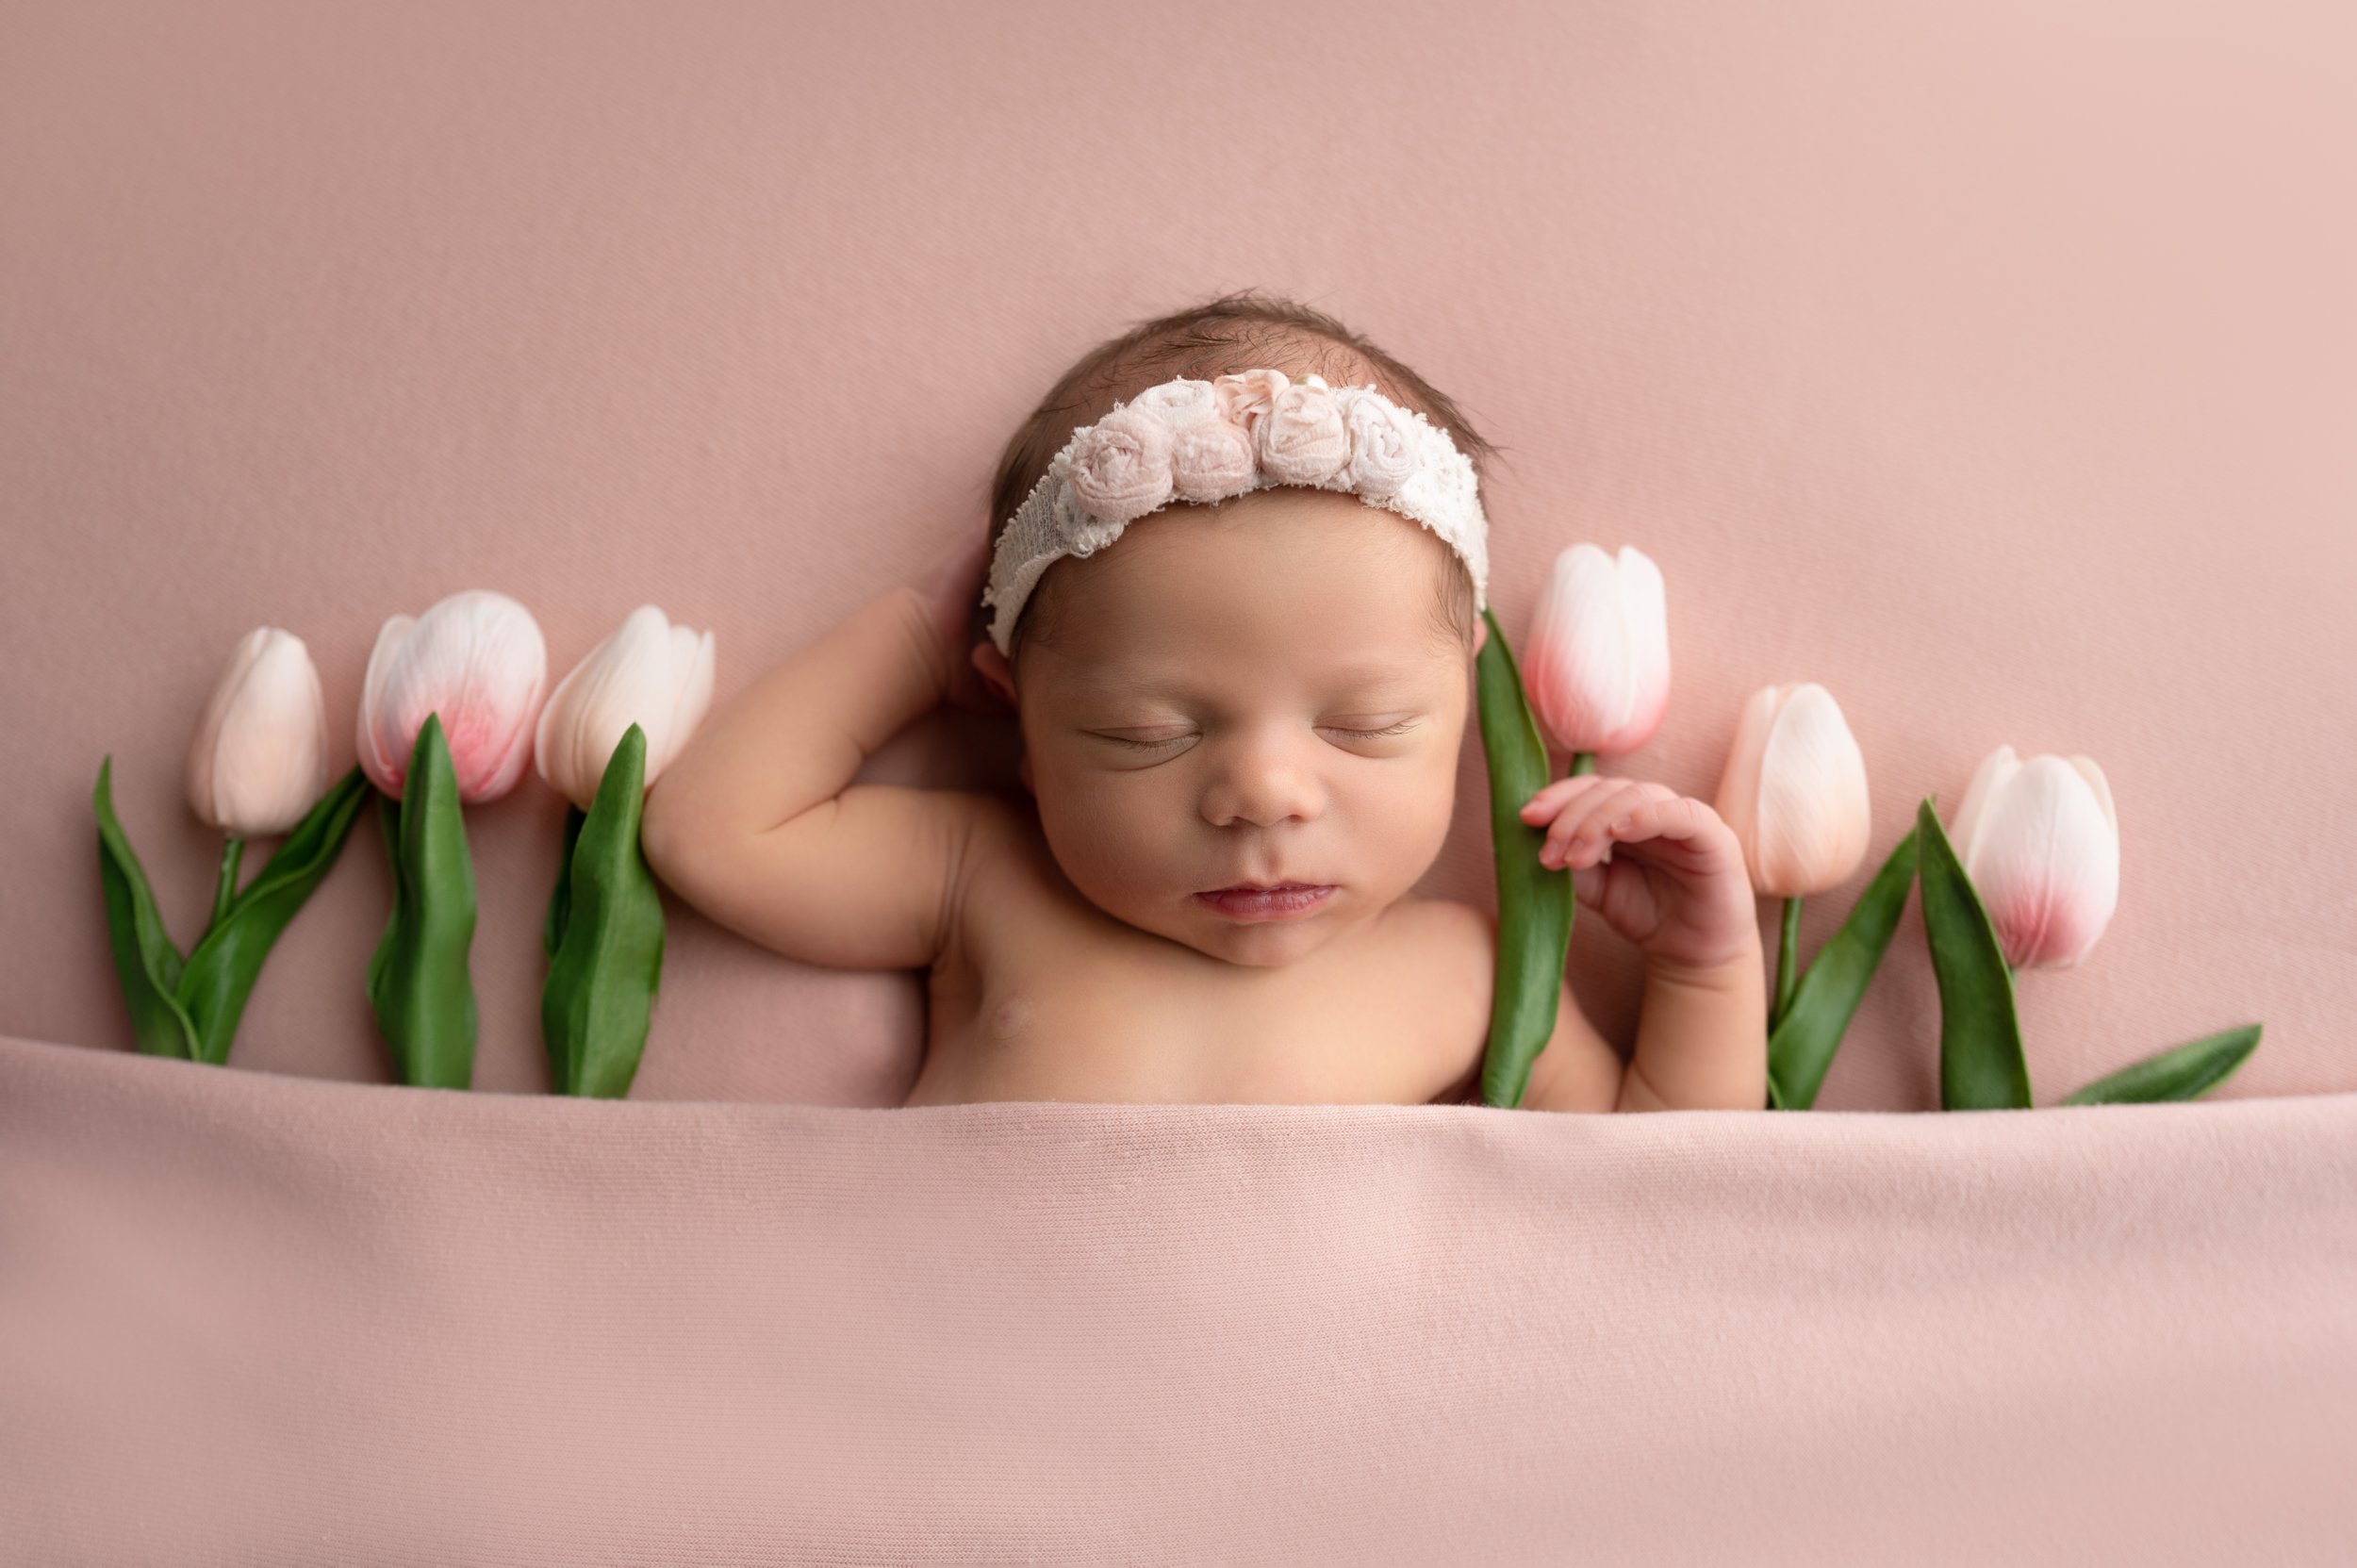 newborn baby girl photo shoot with tulips